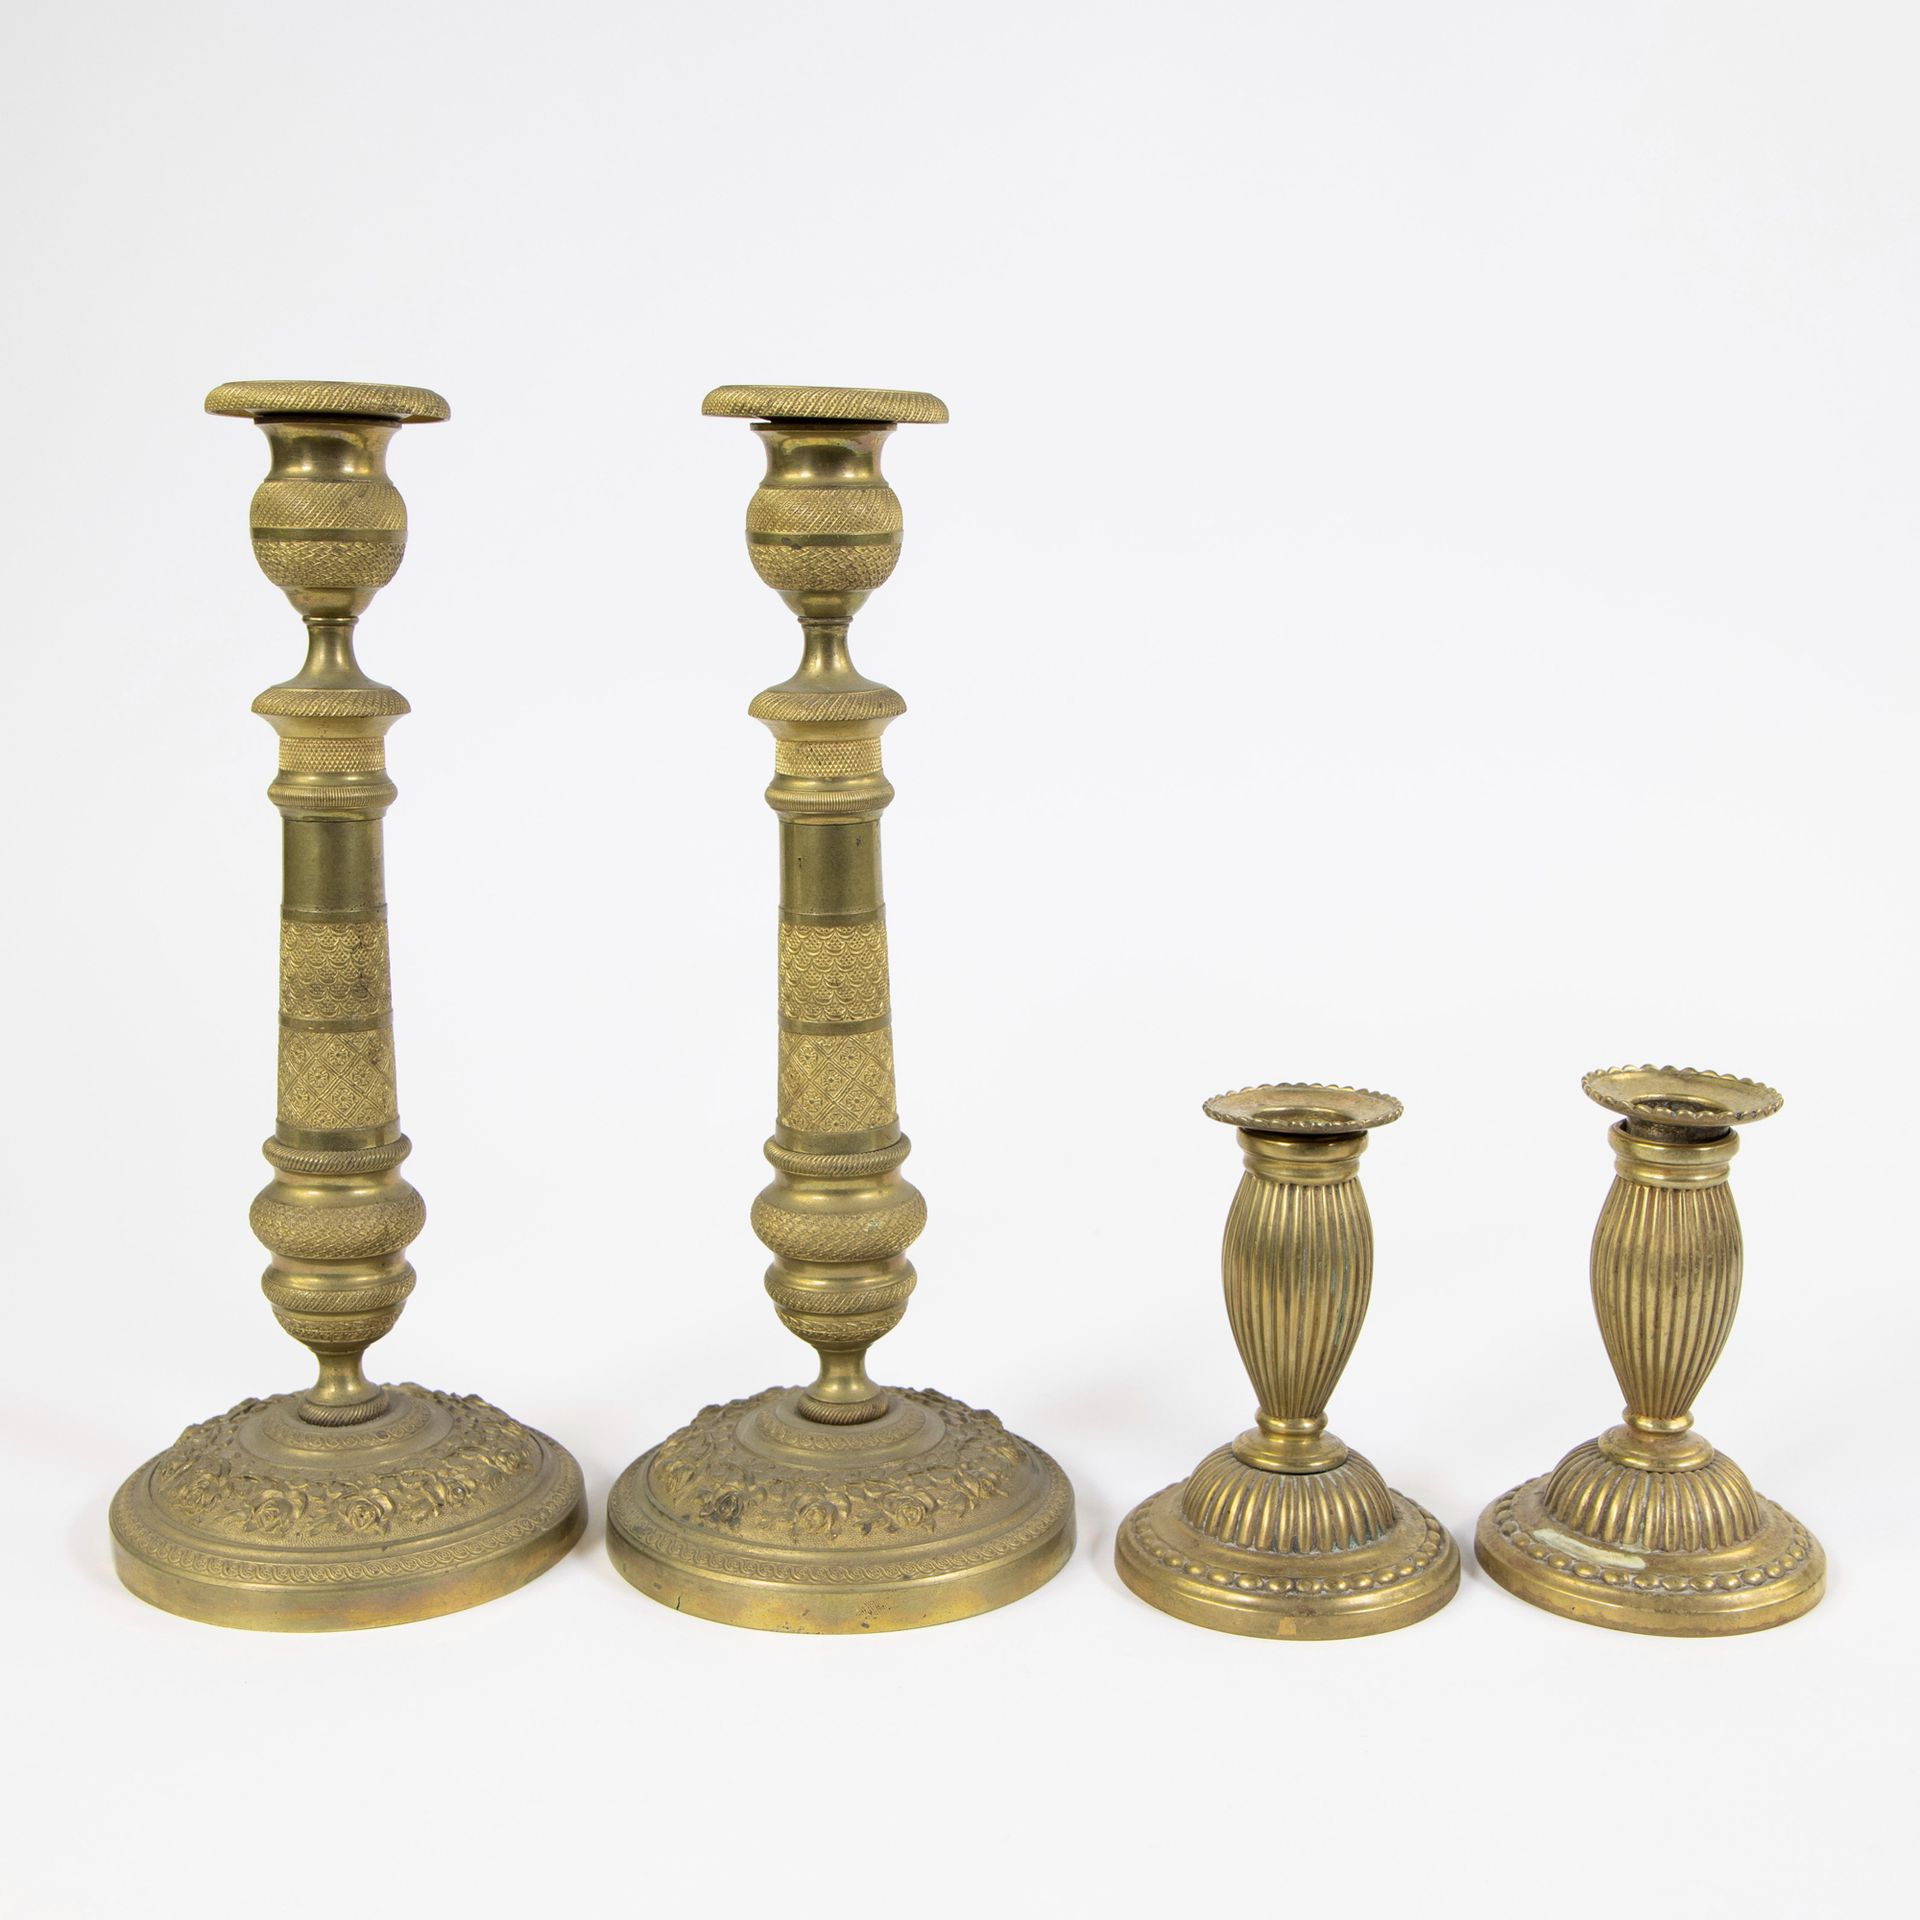 Null 一对烛台查尔斯十世和一对小烛台，19世纪
Koppel kandelaars Charles X en koppel kleine kandelaar&hellip;